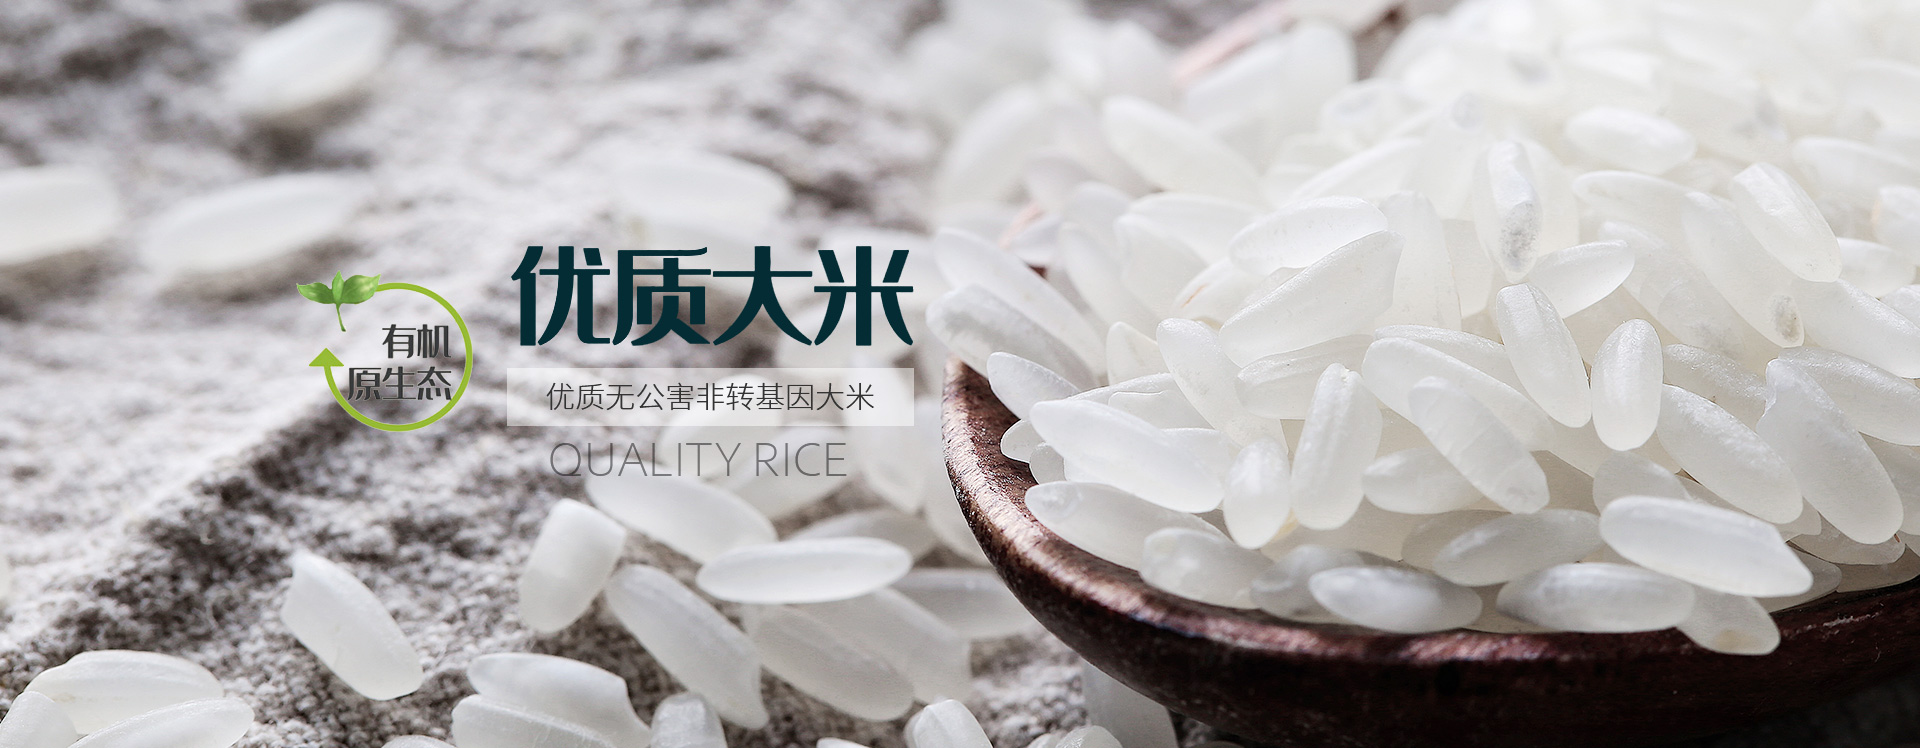 五常大米,瑞米轩,有机水稻种植